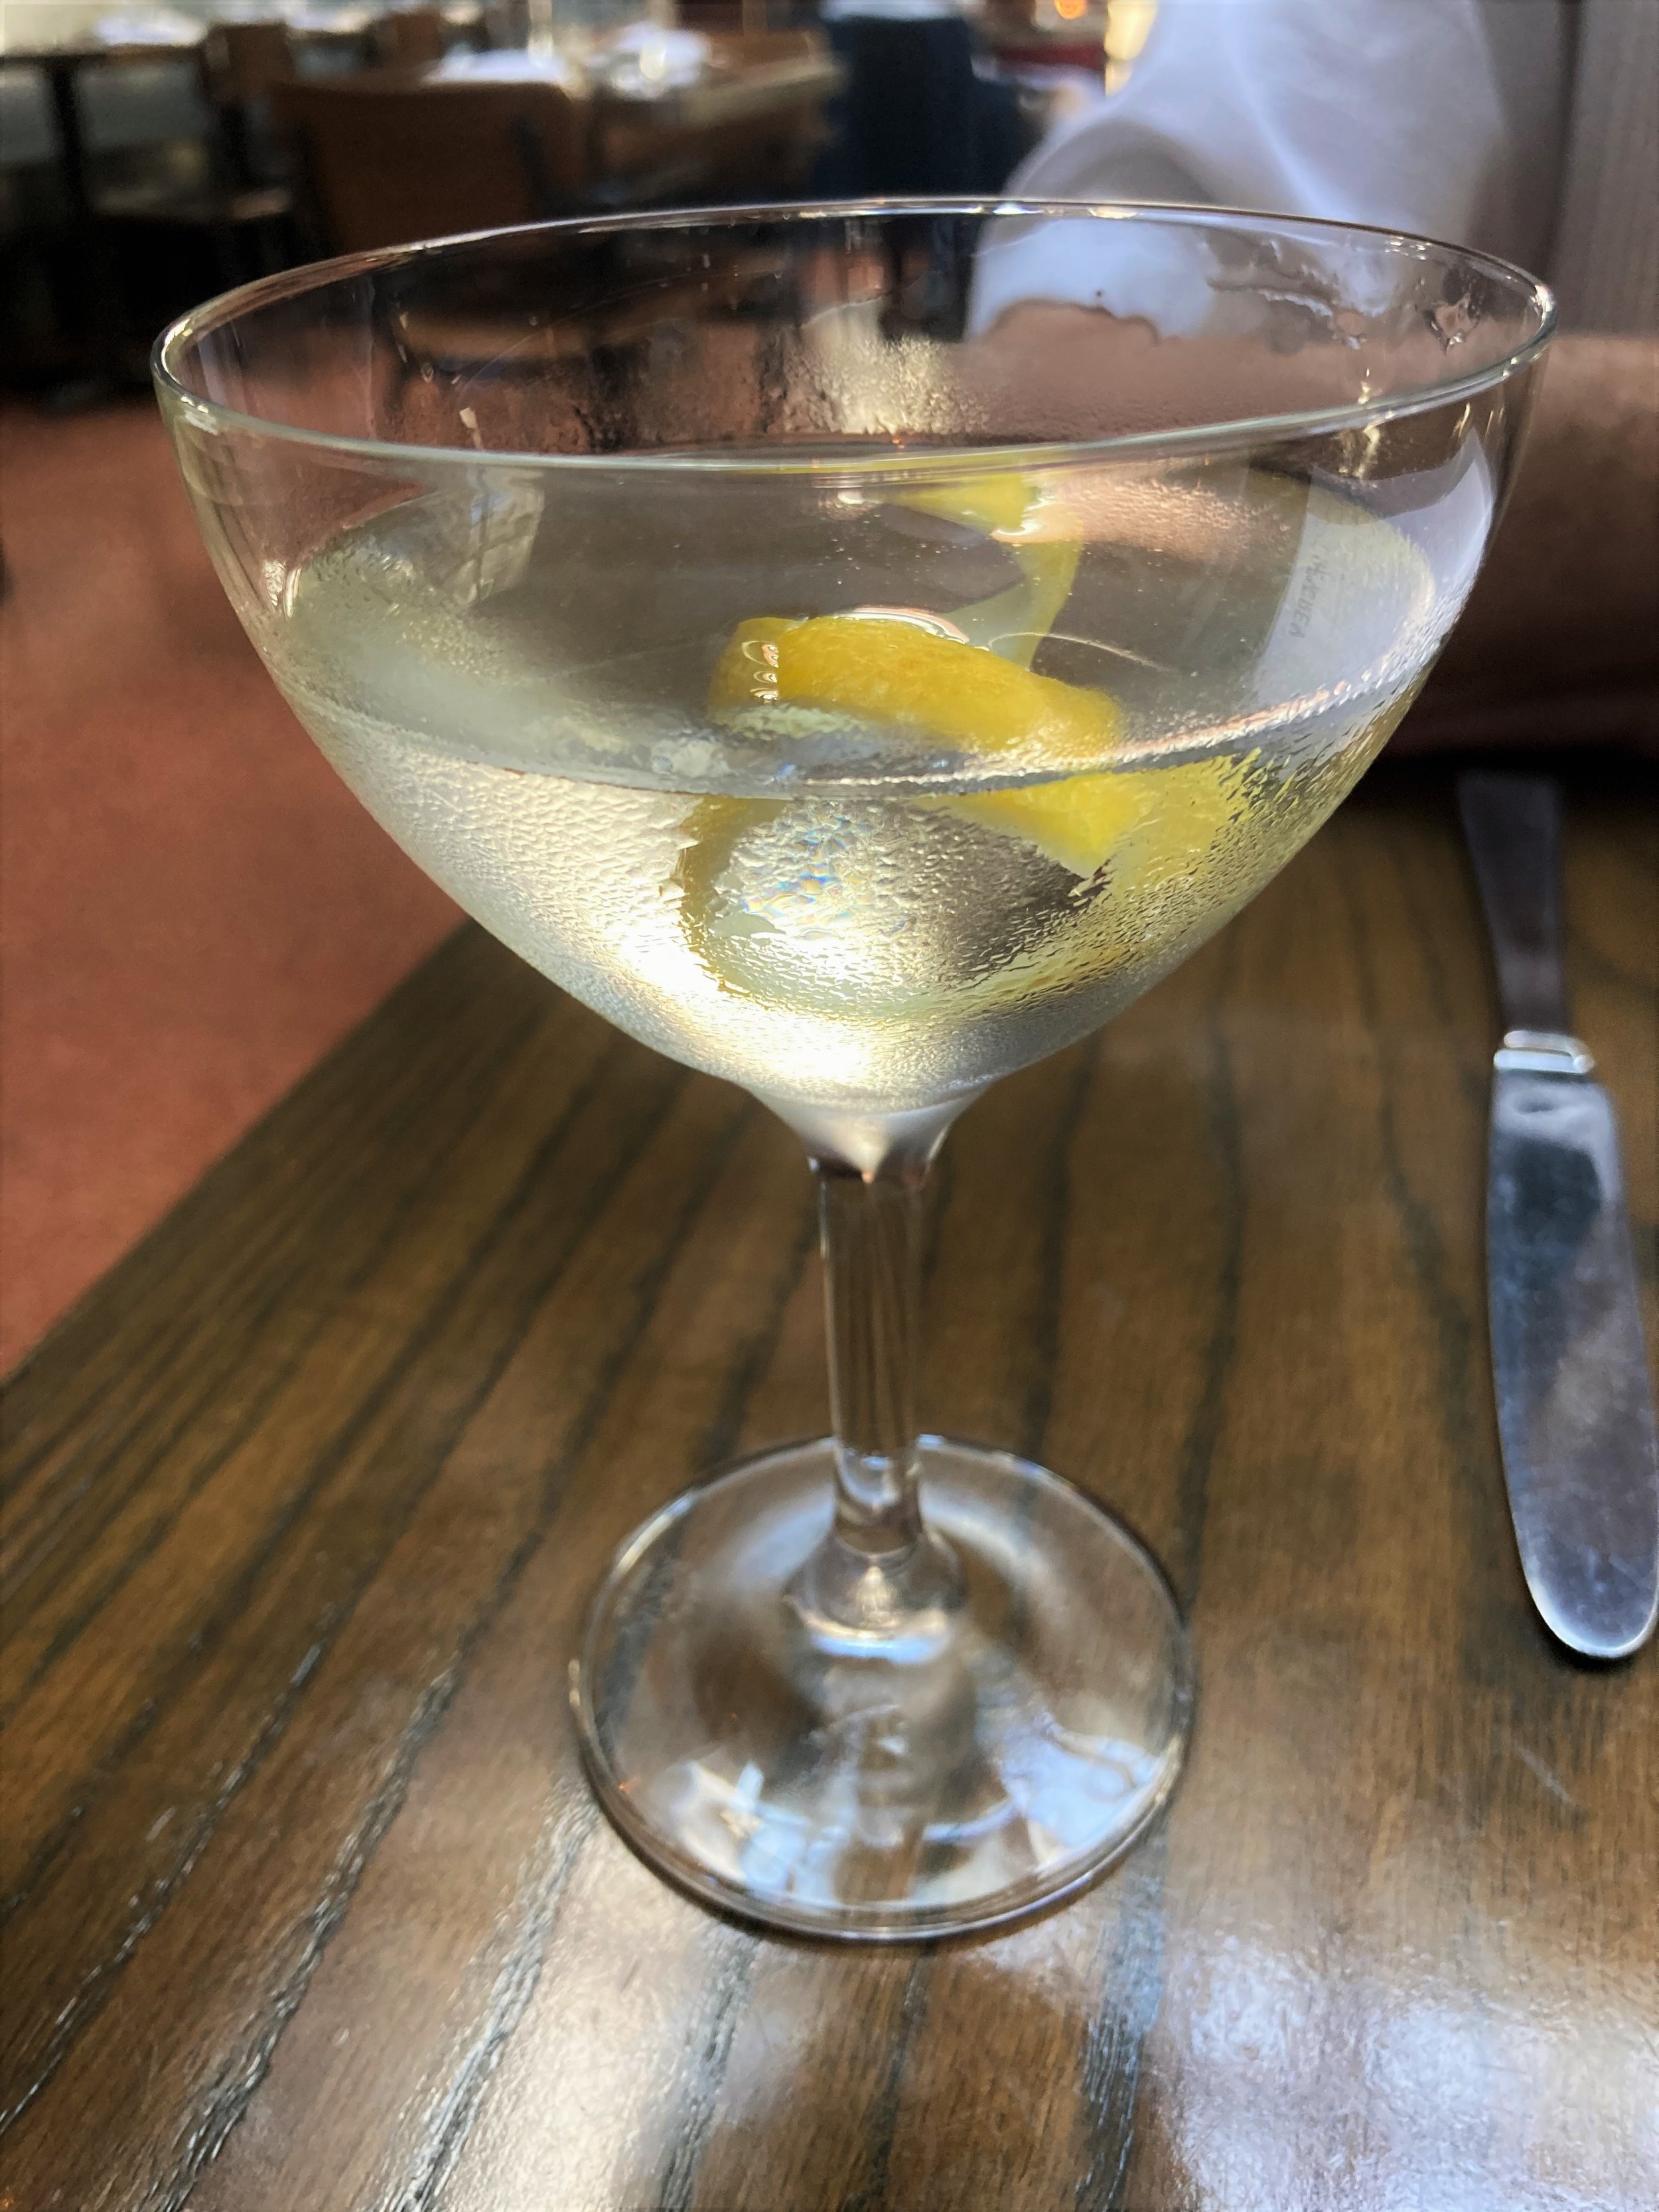 Fat martini